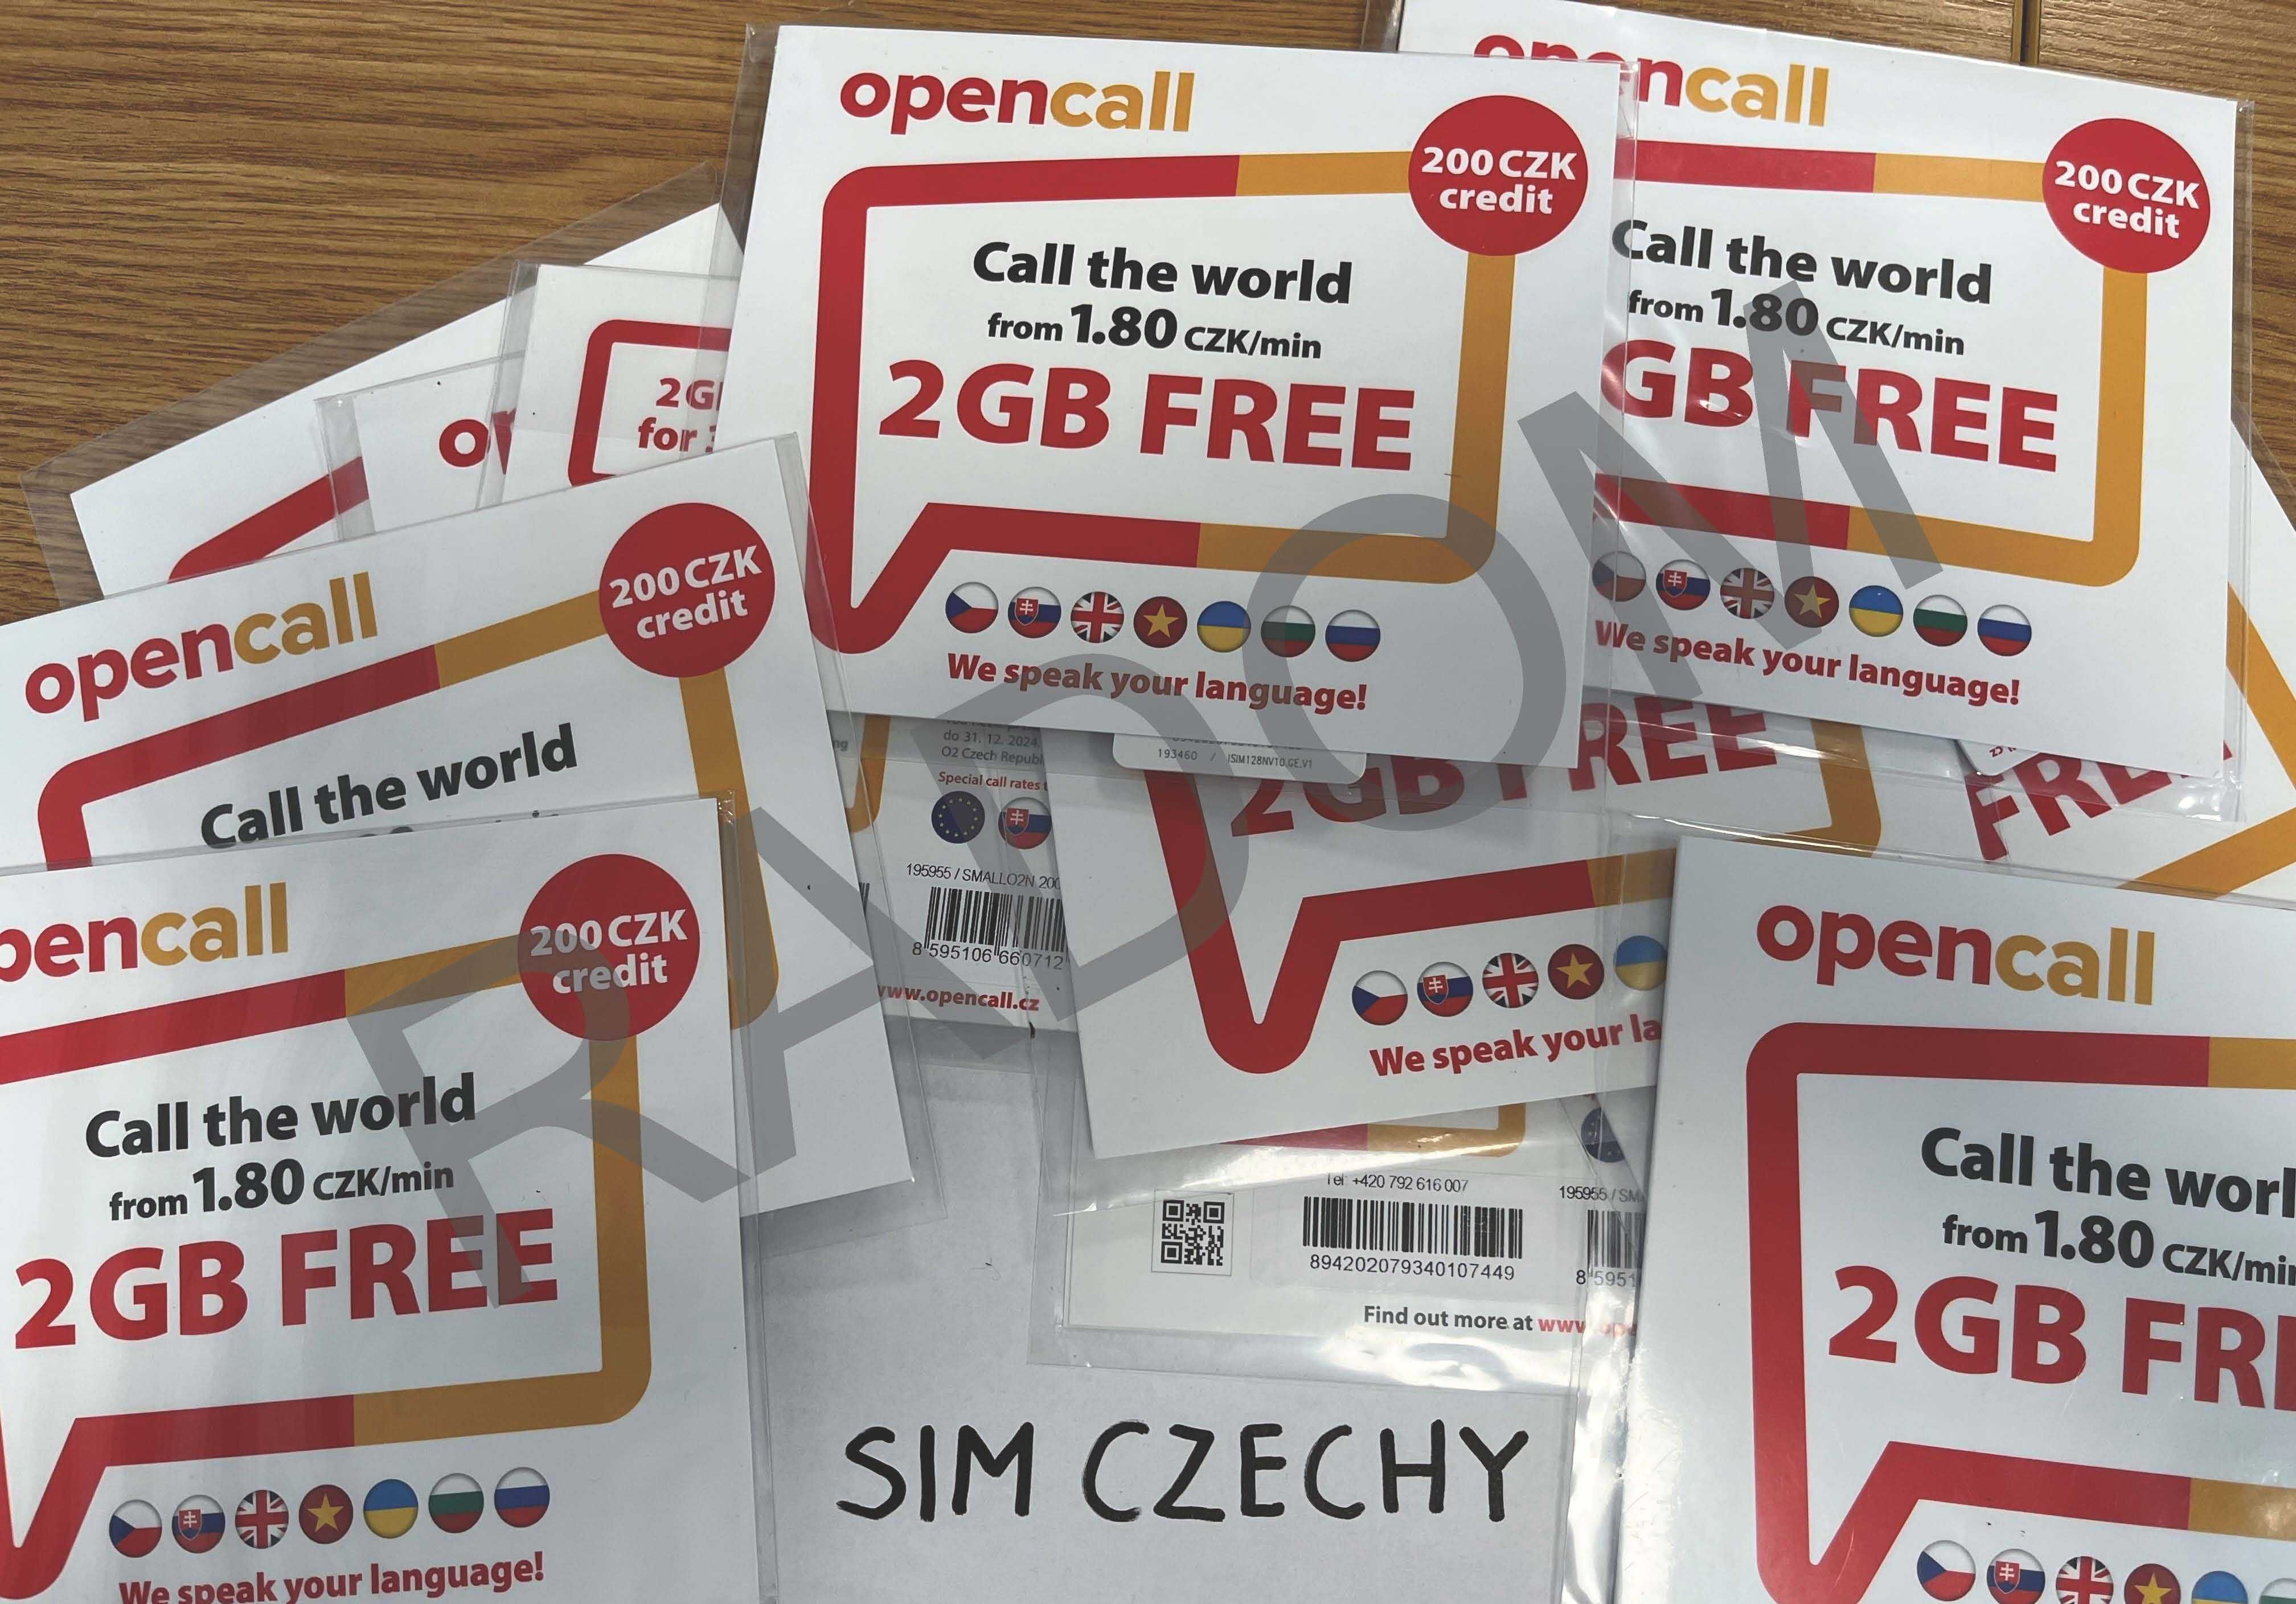 Czechy sim karta Opencall 200kc saldo 2GB czeski starter nowy sieci O2